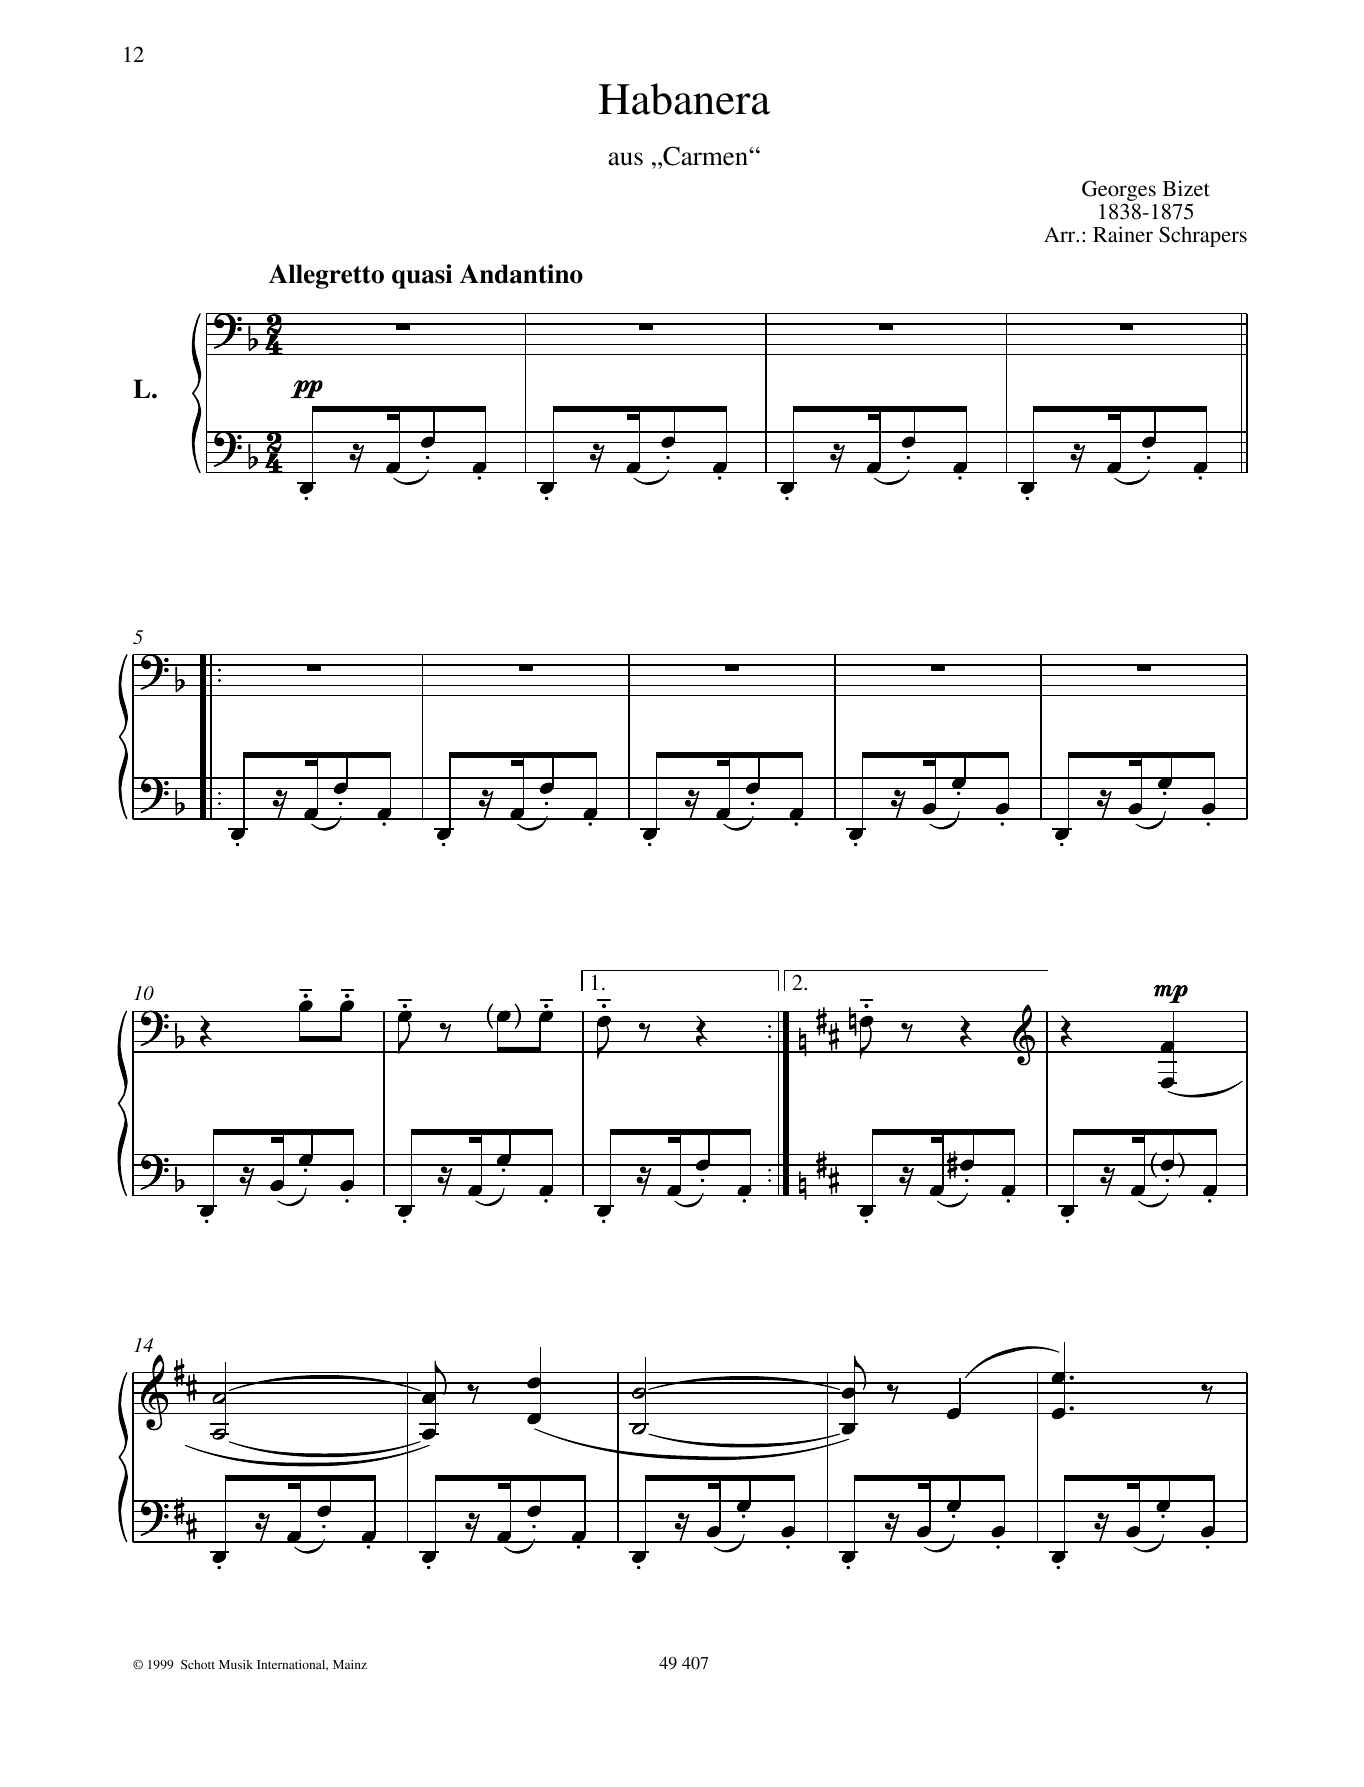 Habañera sheet music